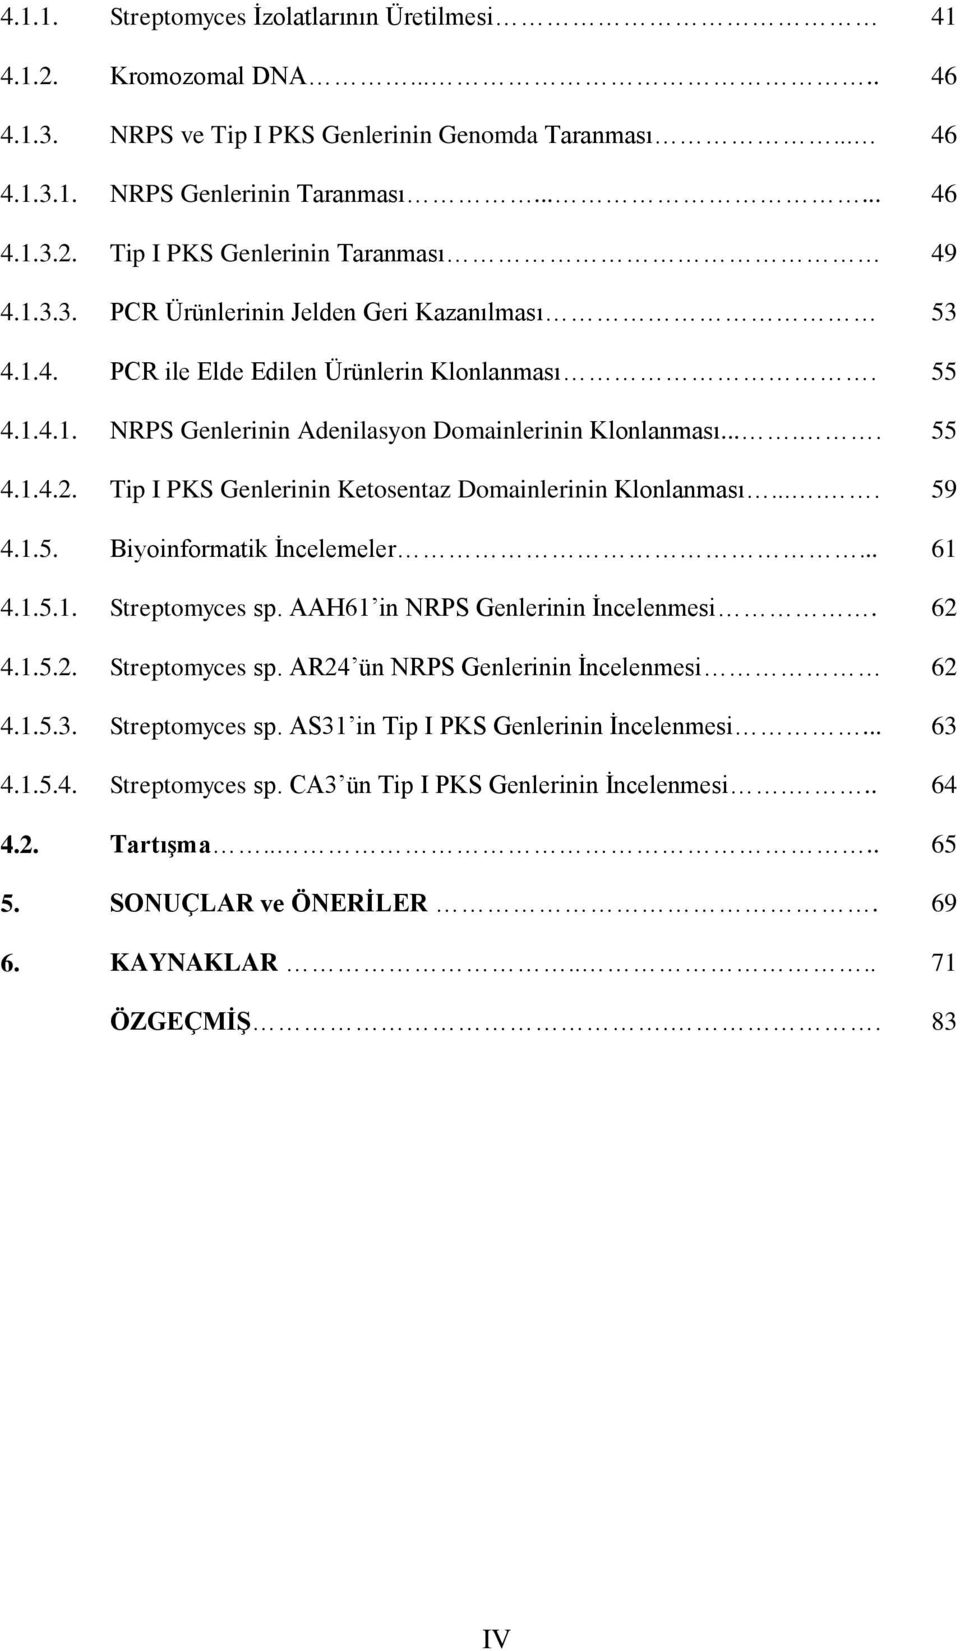 Tip I PKS Genlerinin Ketosentaz Domainlerinin Klonlanması..... 59 4.1.5. Biyoinformatik İncelemeler... 61 4.1.5.1. Streptomyces sp. AAH61 in NRPS Genlerinin İncelenmesi. 62 4.1.5.2. Streptomyces sp. AR24 ün NRPS Genlerinin İncelenmesi 62 4.